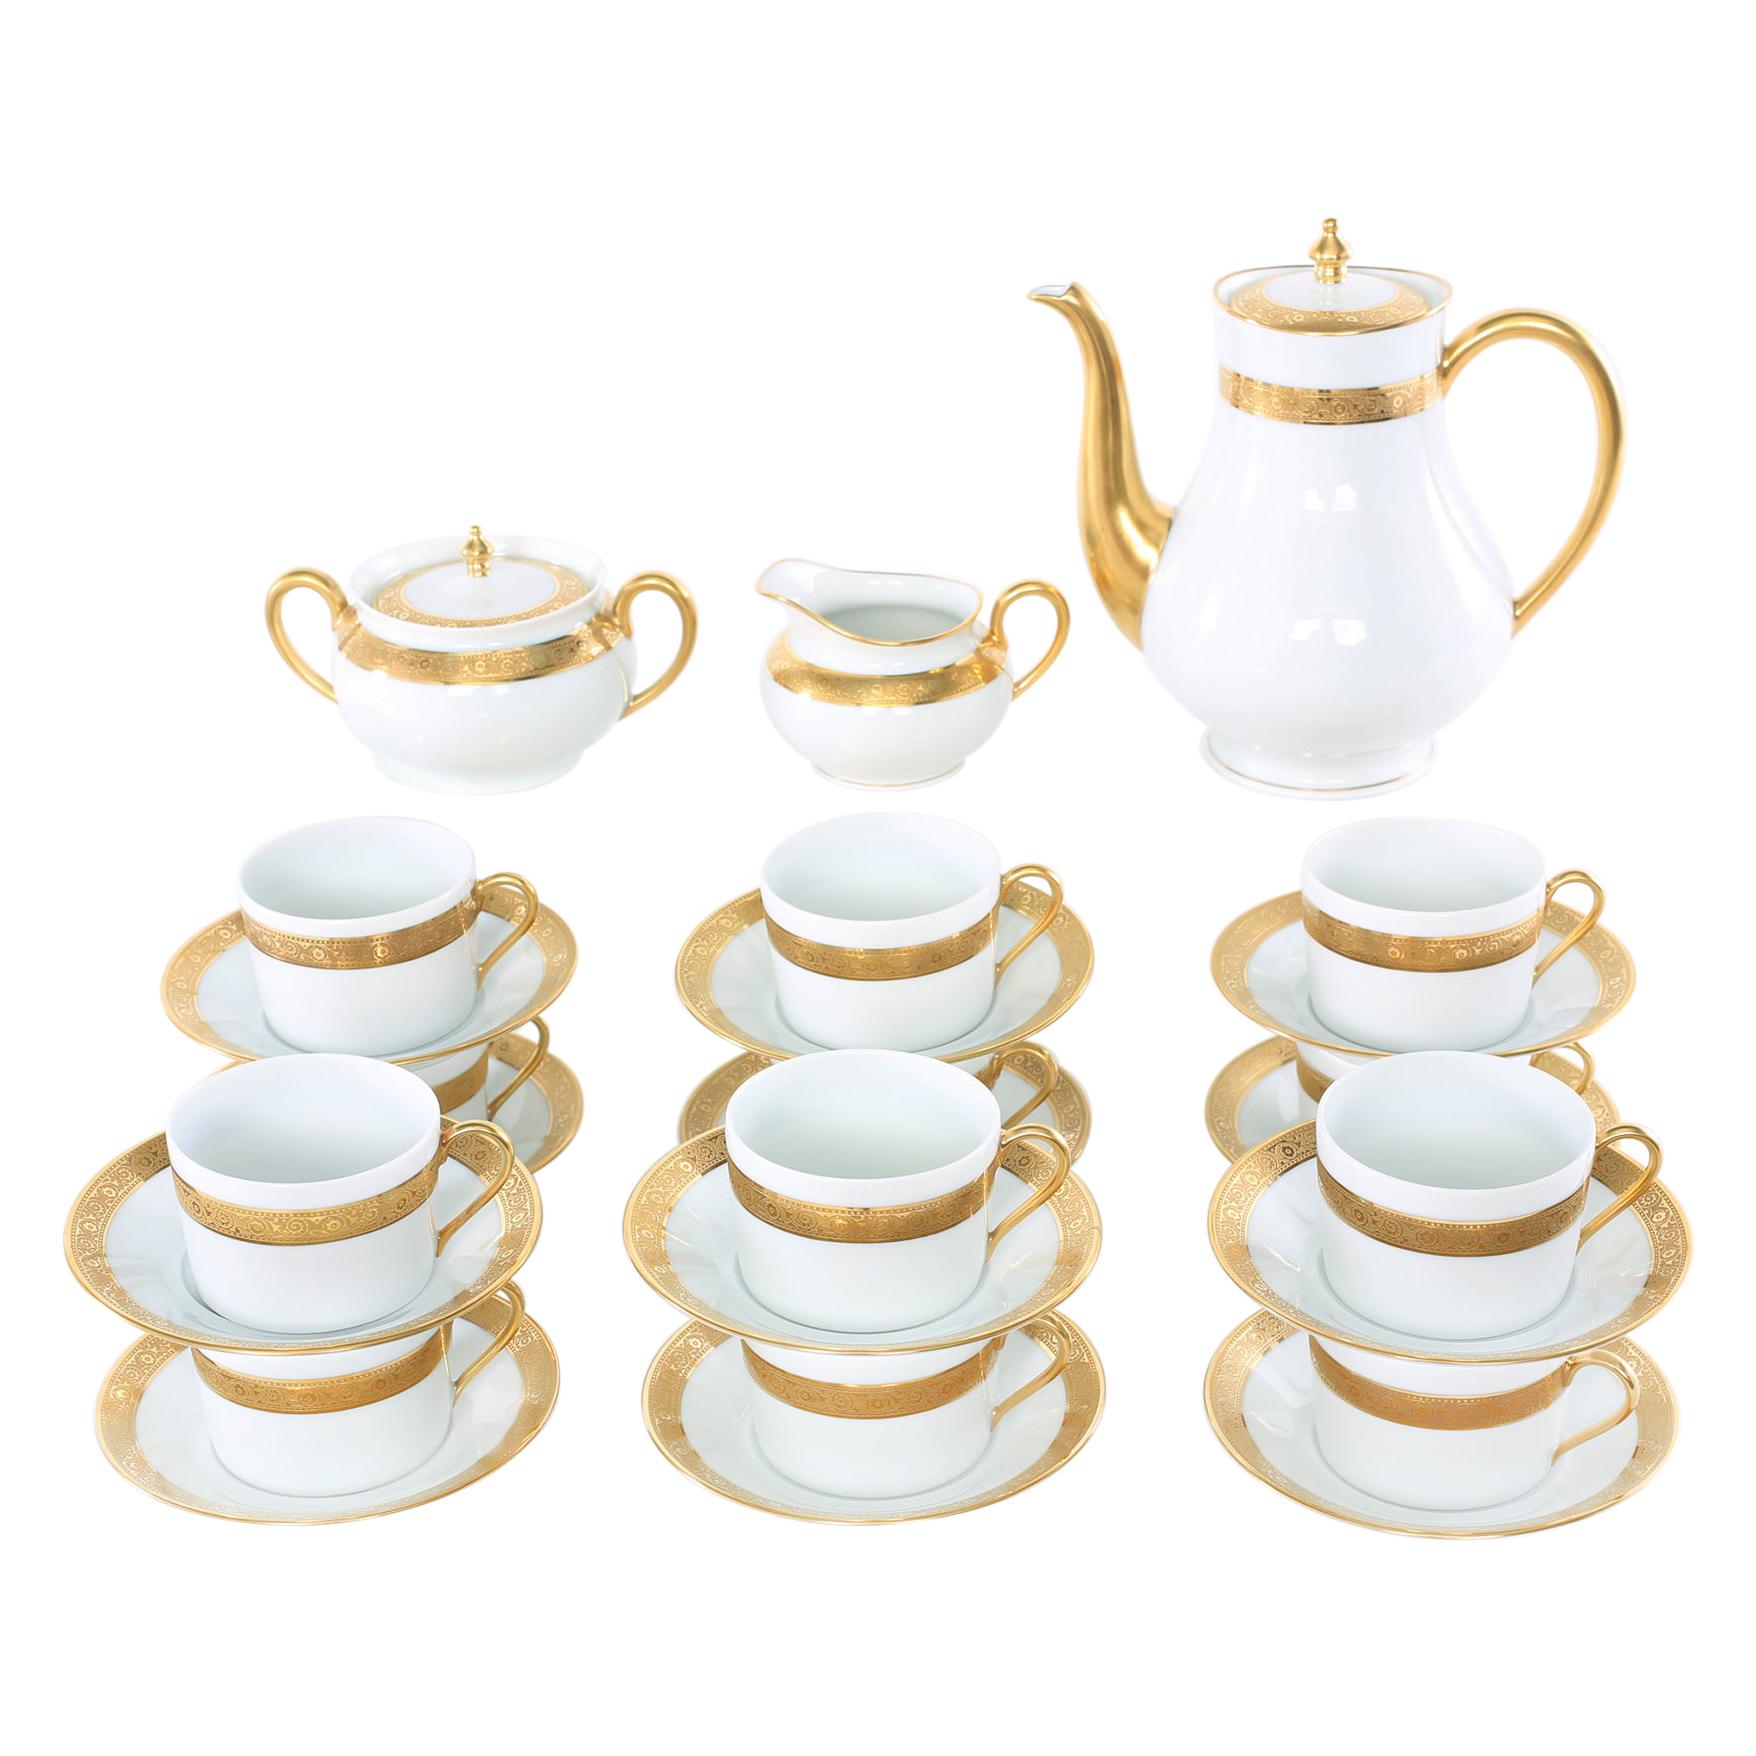 Haviland Limoges Gilt Porcelain Coffee / Tea Service for 12